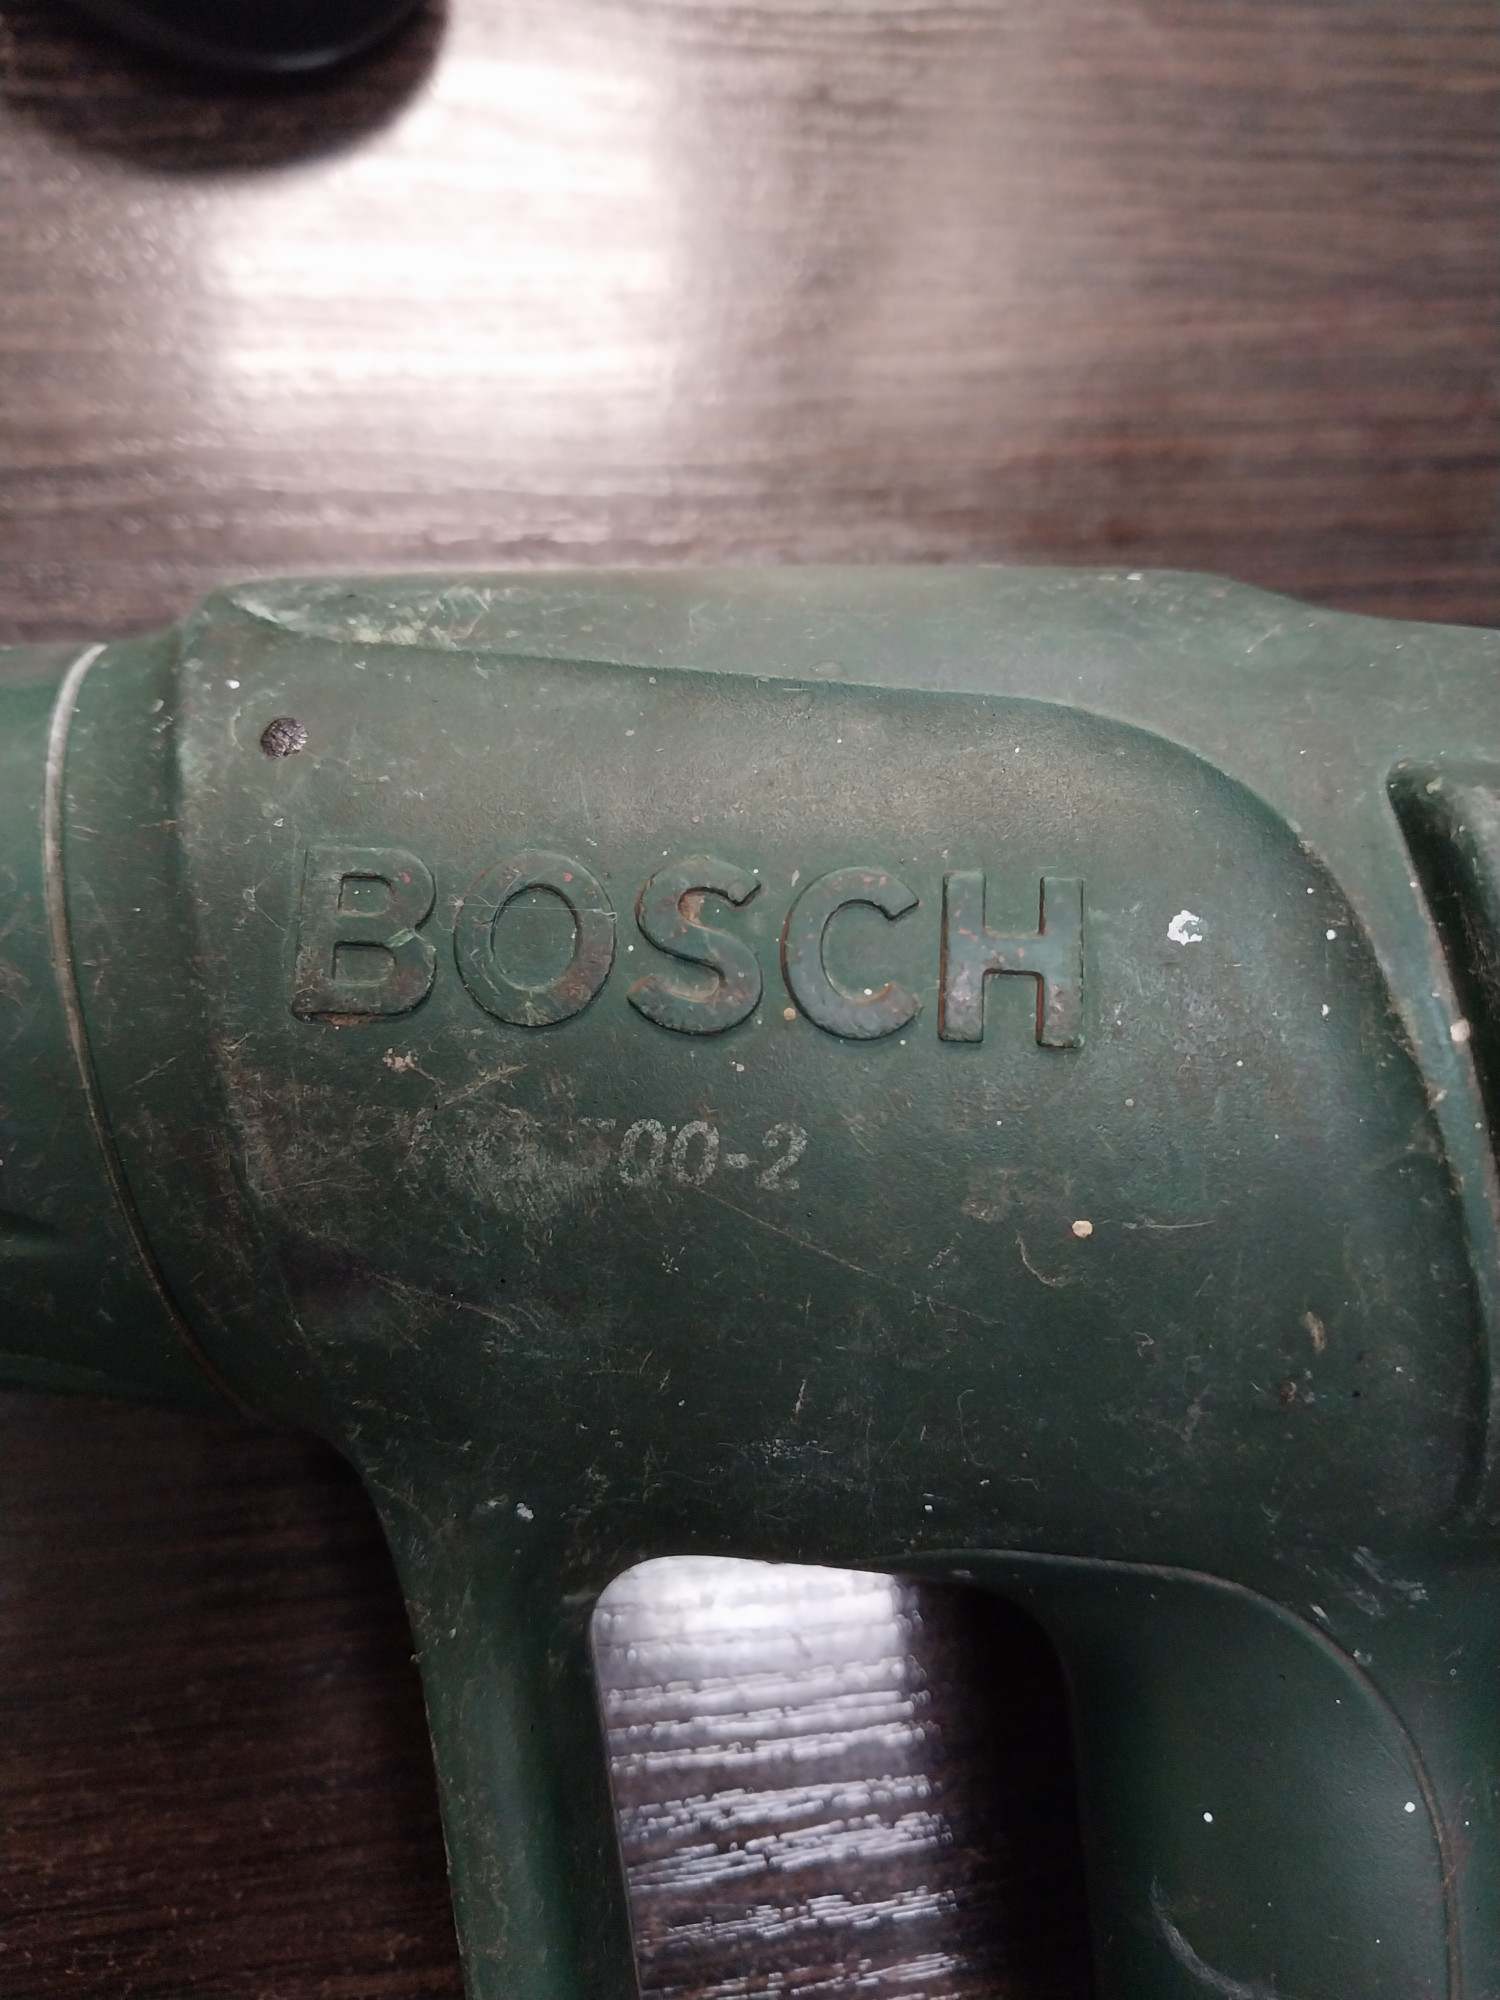 Фен строительный Bosch PHG 500-2 2